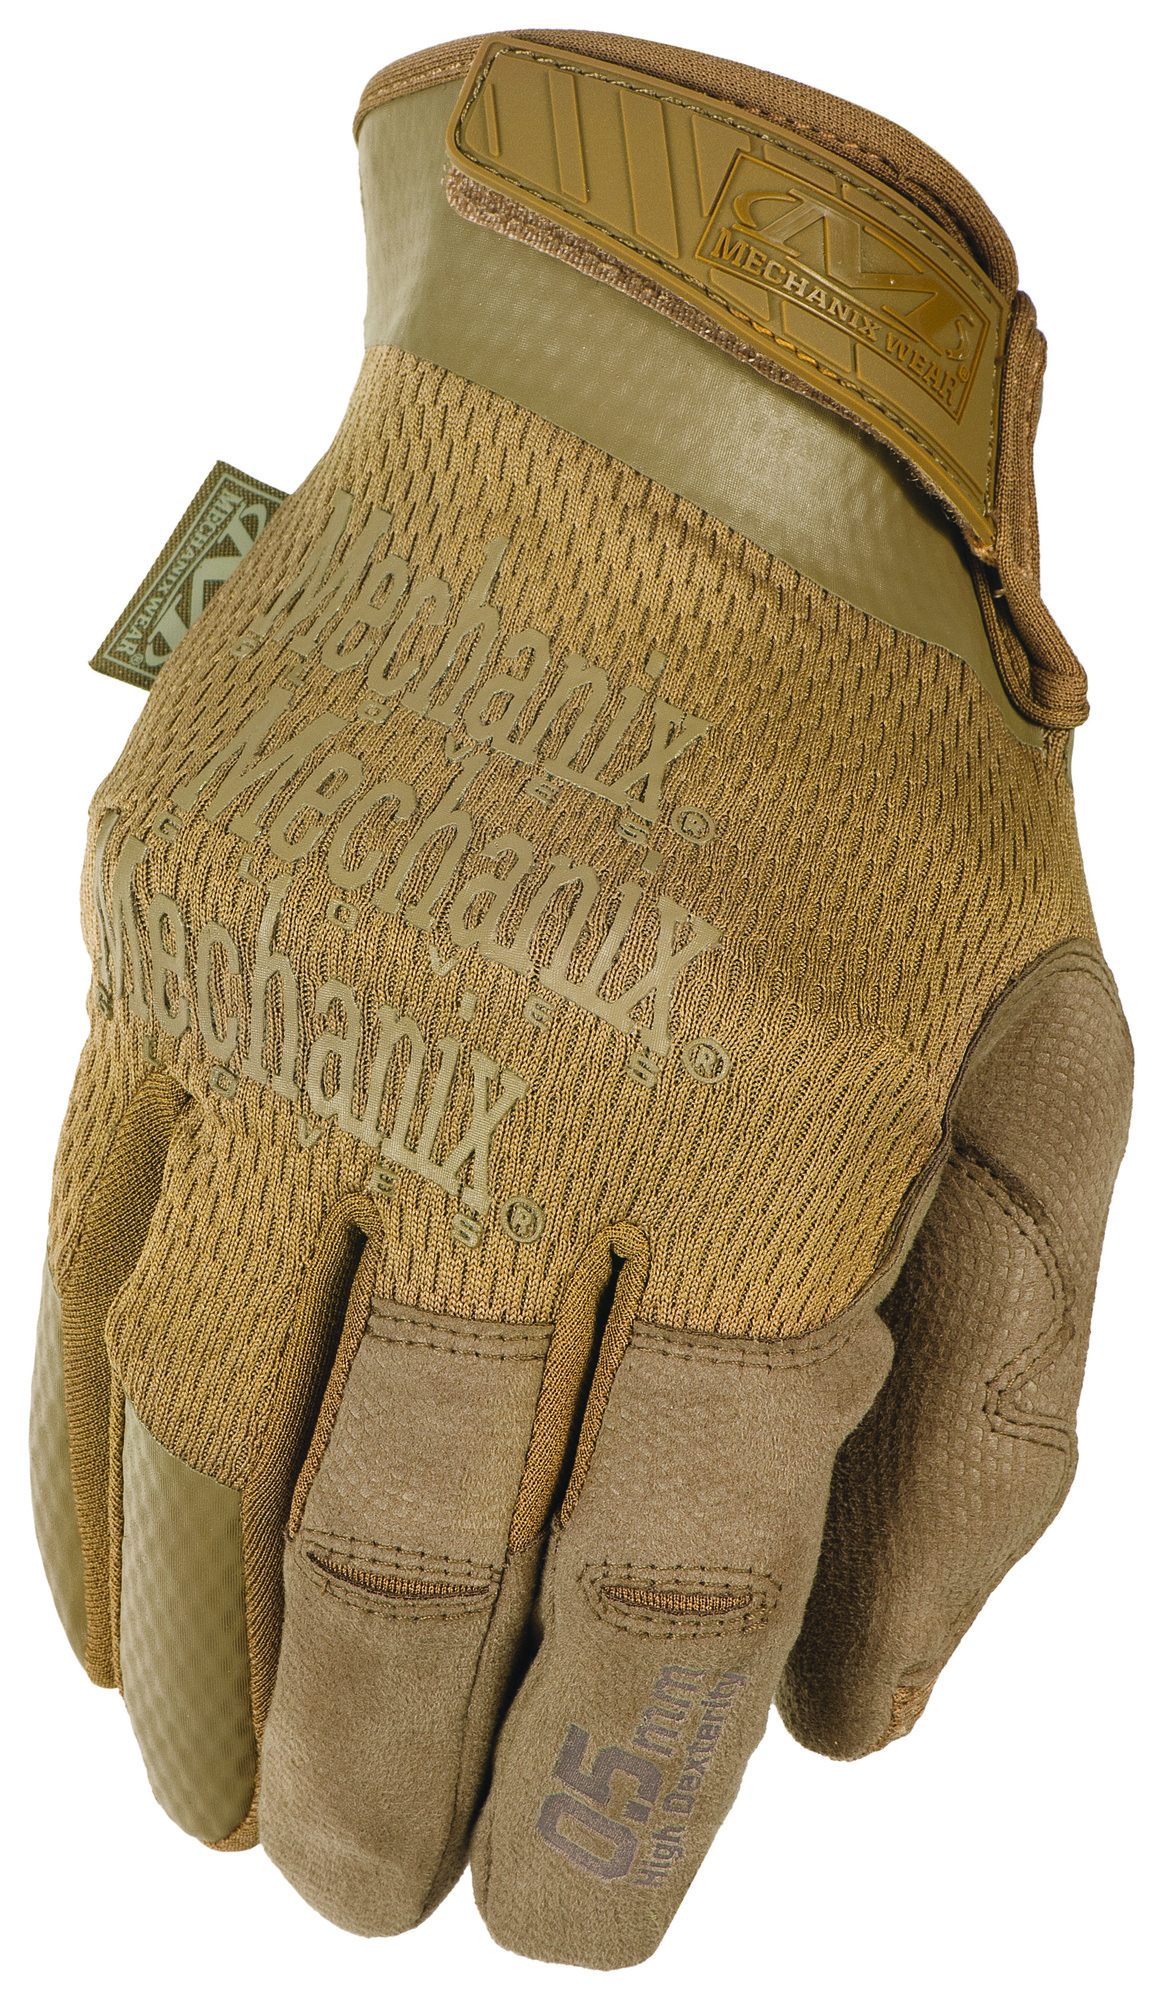 MECHANIX rukavice pre vysokýcit Specialty 0.5MM High-Dex - Coyote S/8